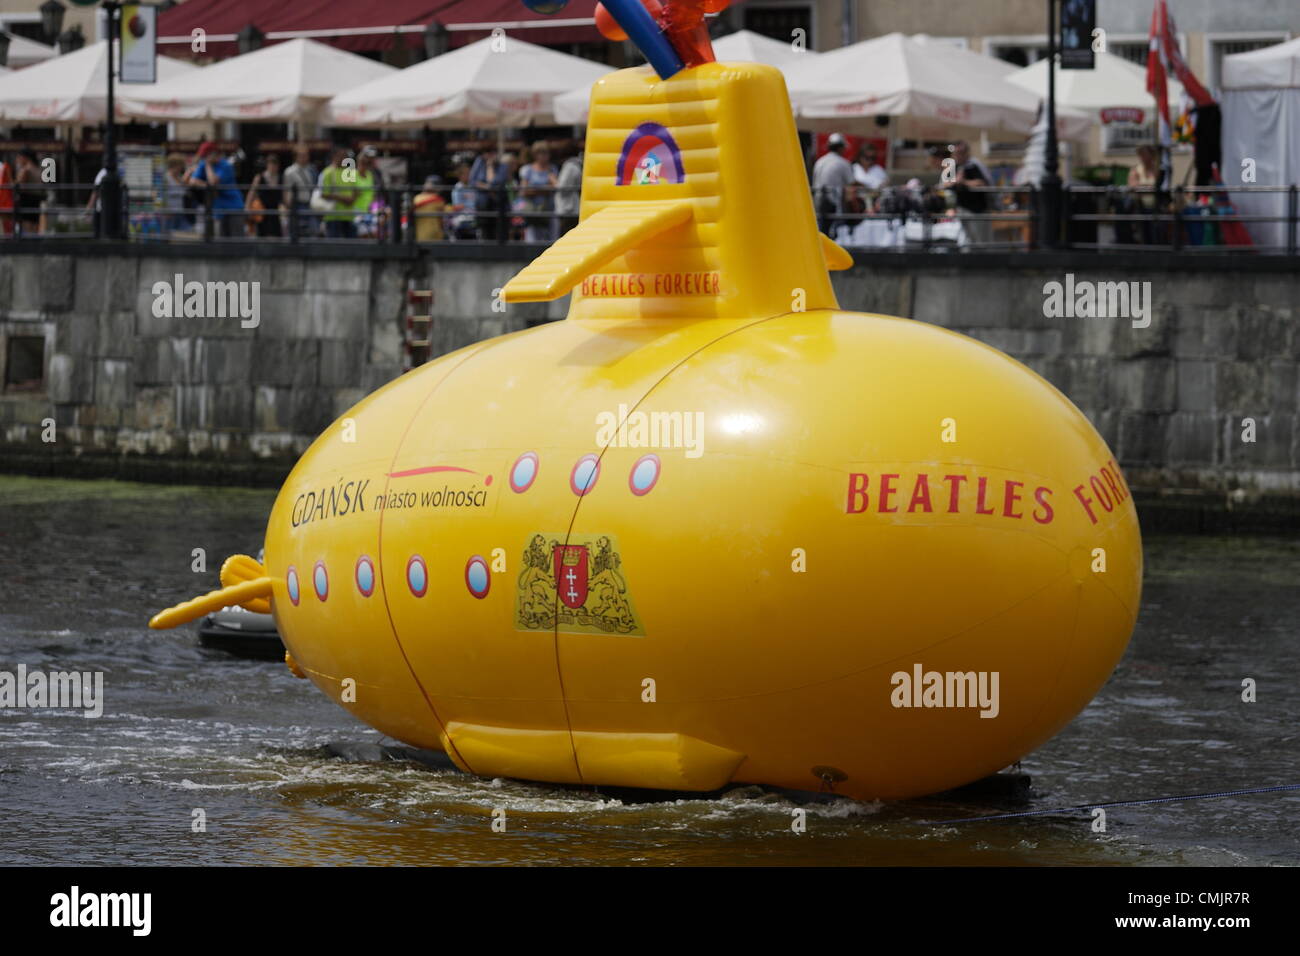 Gdansk, Polonia 18th, Agosto 2012 sottomarino giallo sul fiume Motlawa. Prestazioni organizzate nel cinquantesimo anniversario della prima i Beatles concerto storico con i membri della band. Sottomarino Giallo è uno degli eventi della "Settimana della legenda - Gdansk è il giubileo dei Beatles". Foto Stock